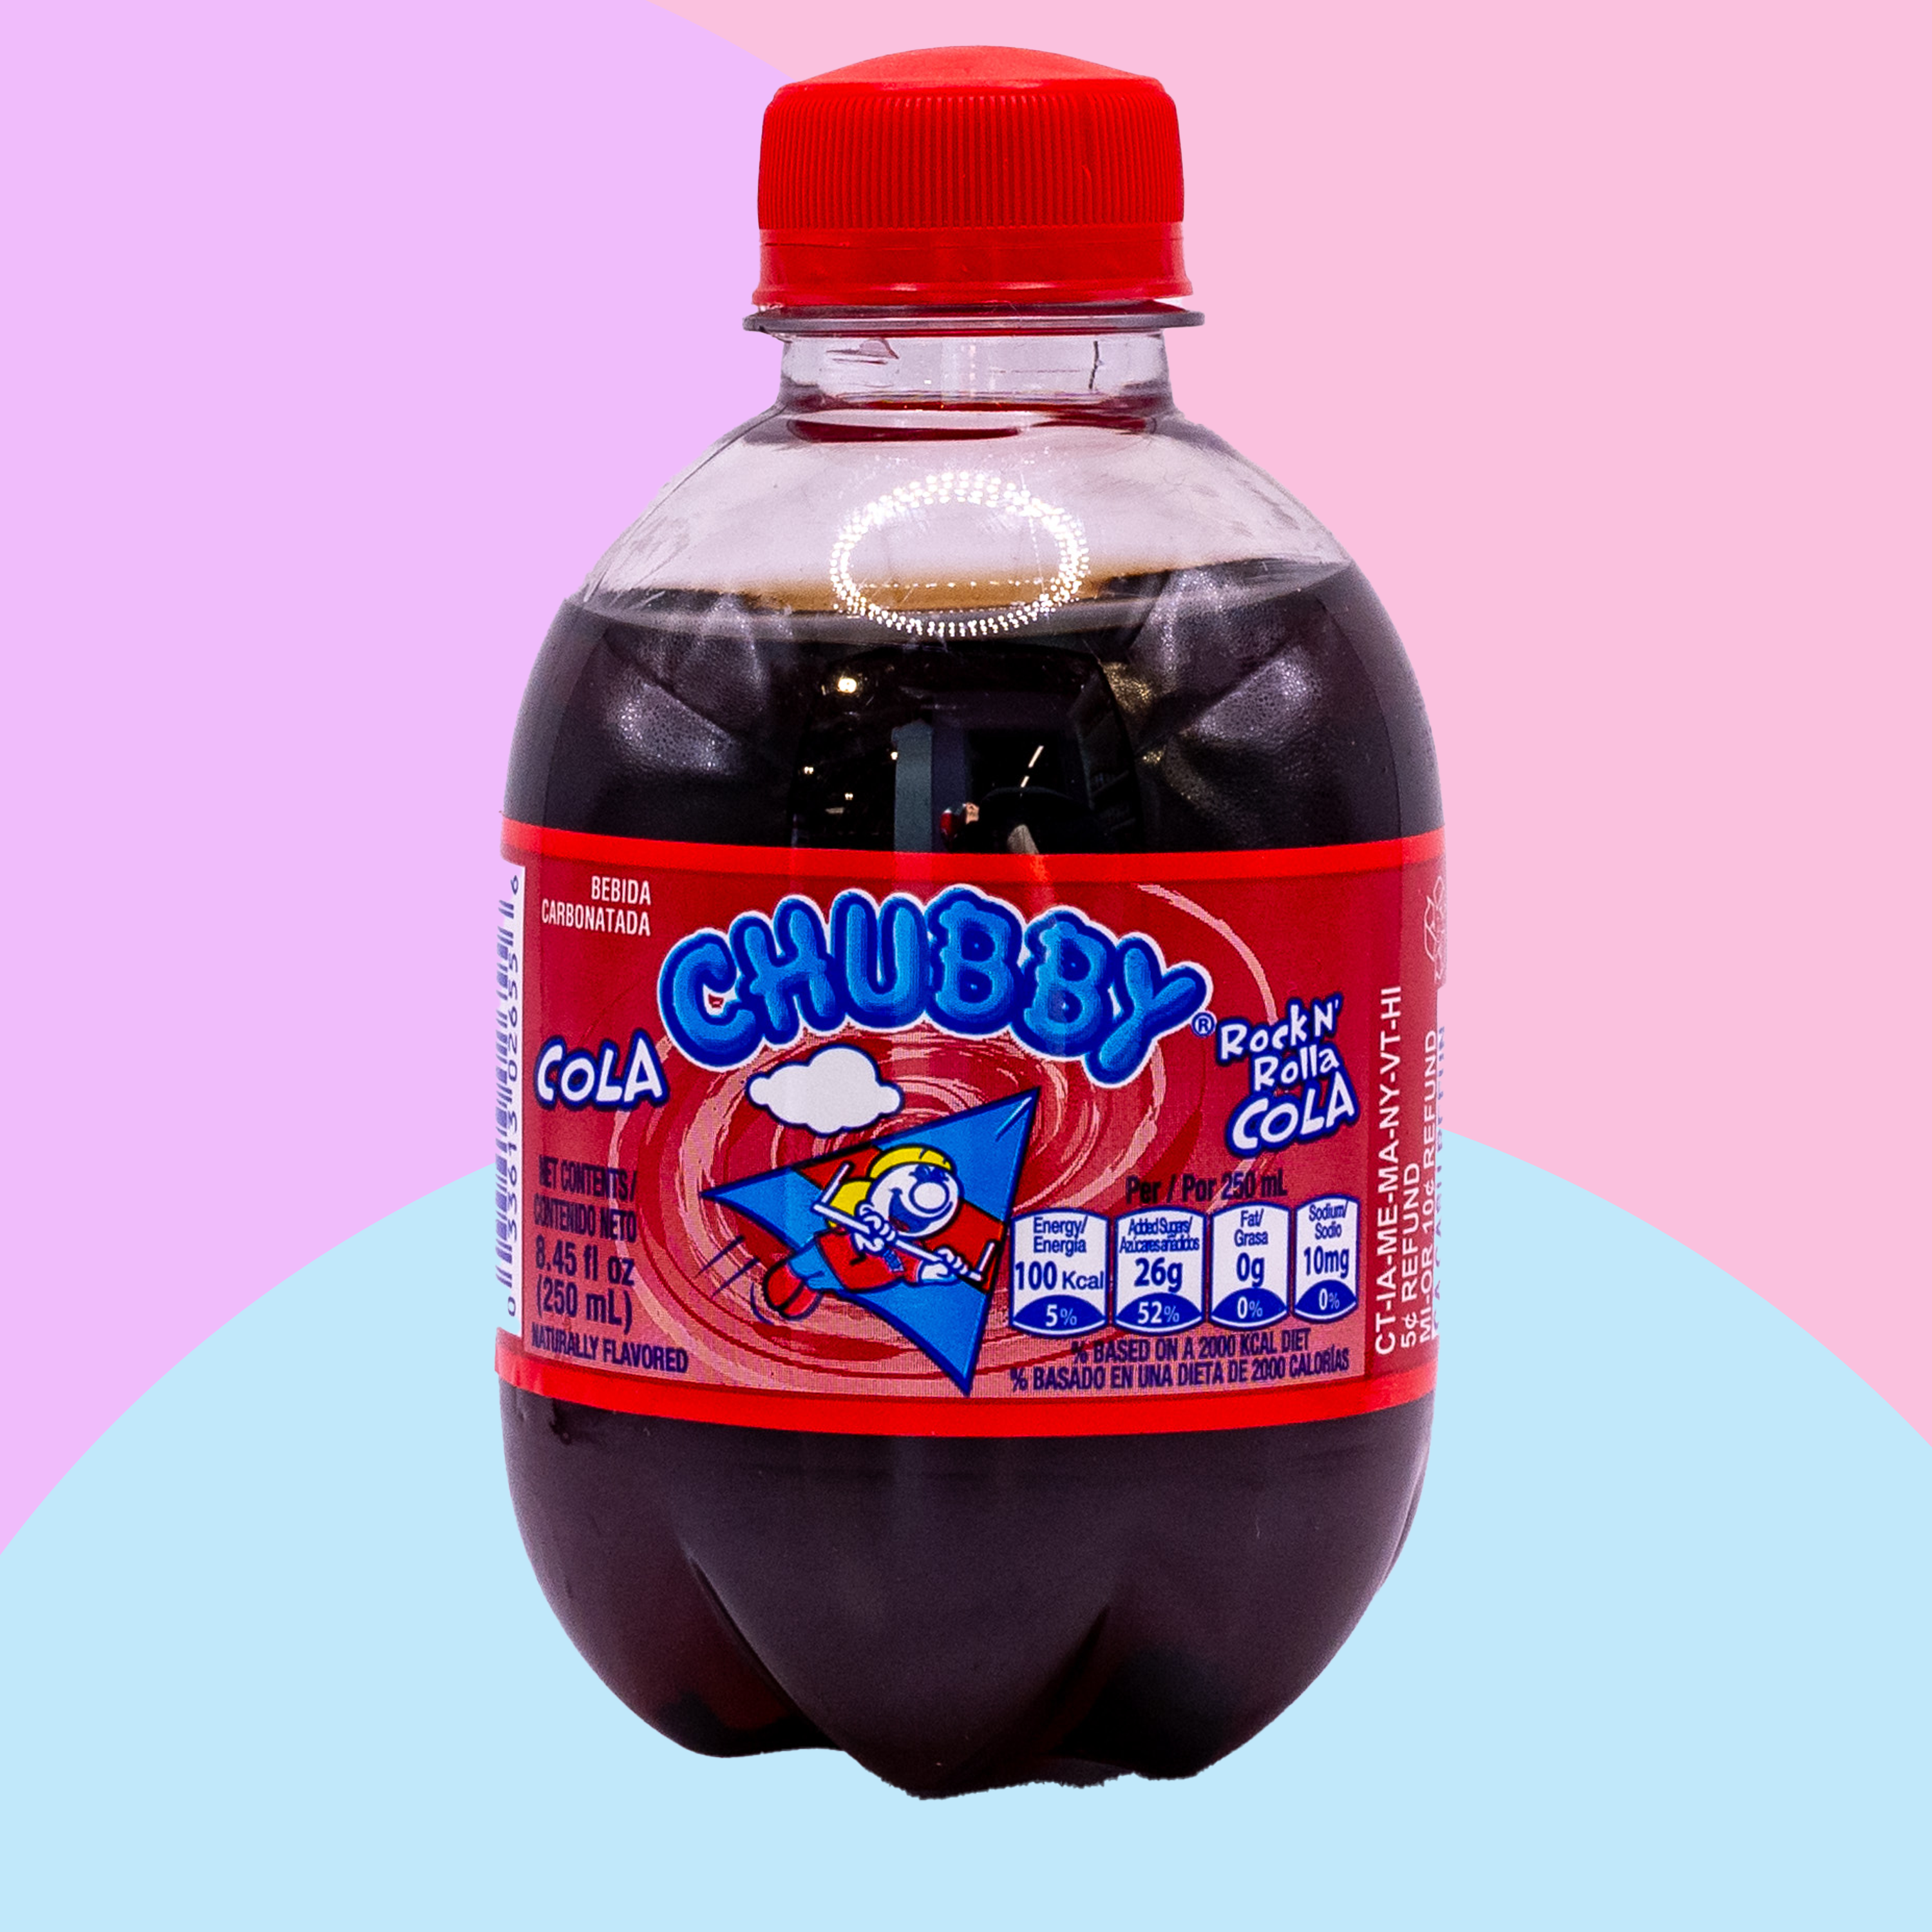 Chubby - Rock N' Rolla Cola - Soda Pop - 250ml